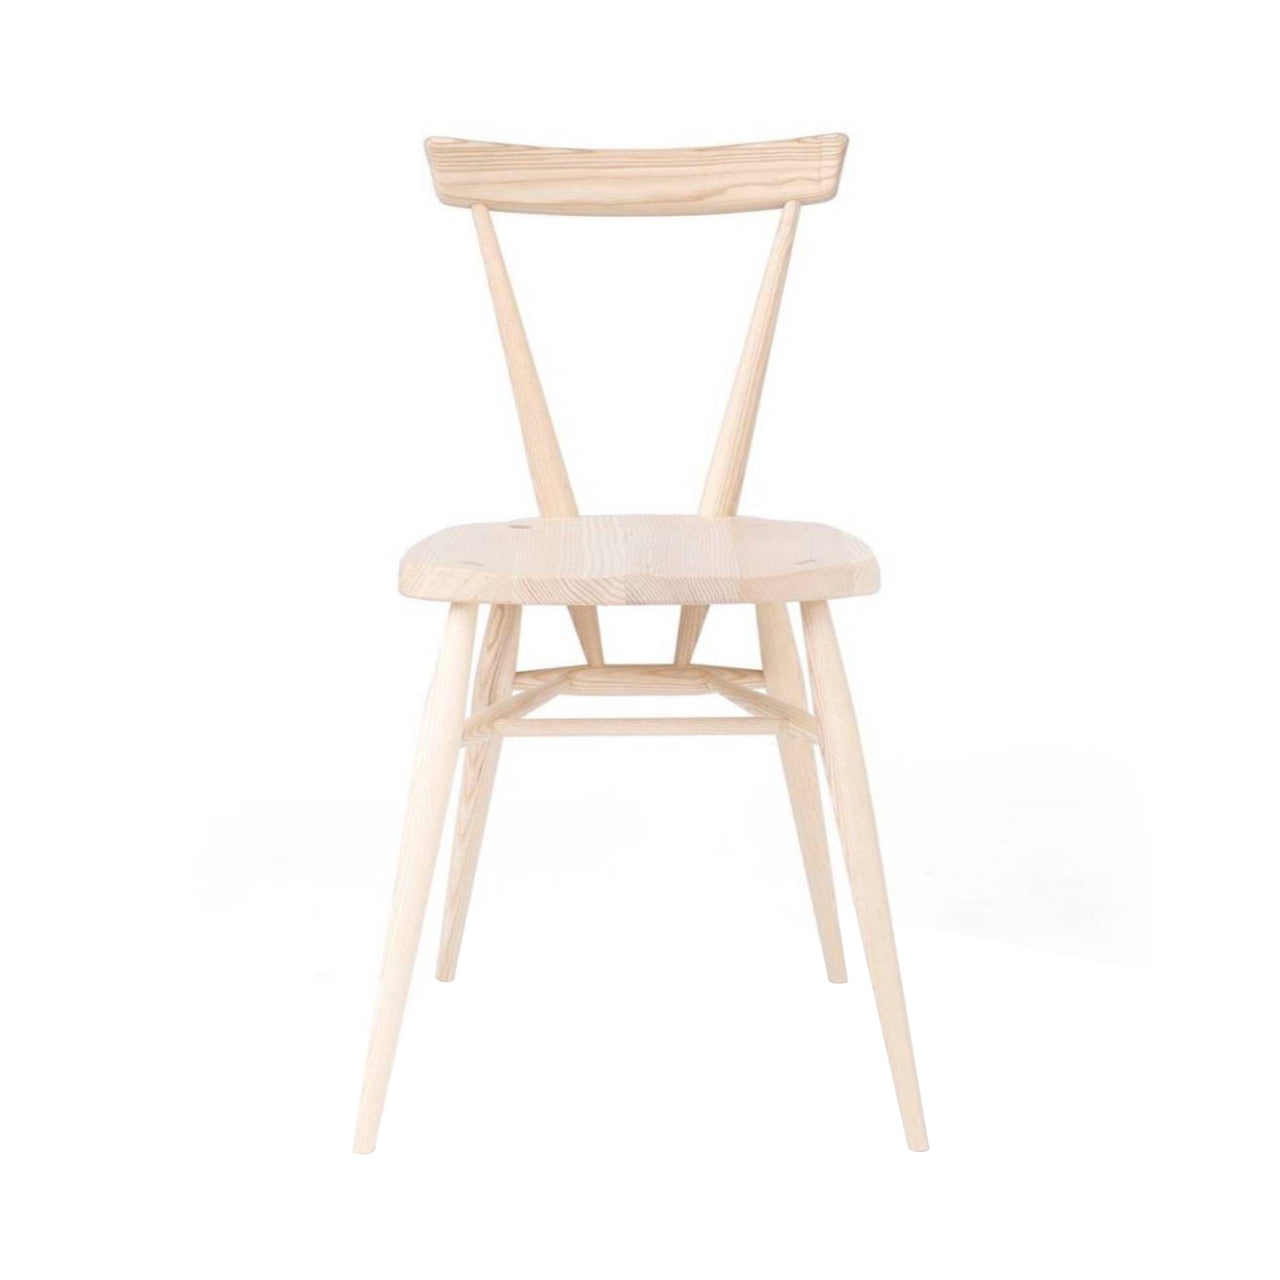 Originals Stacking Chair: Natural Ash